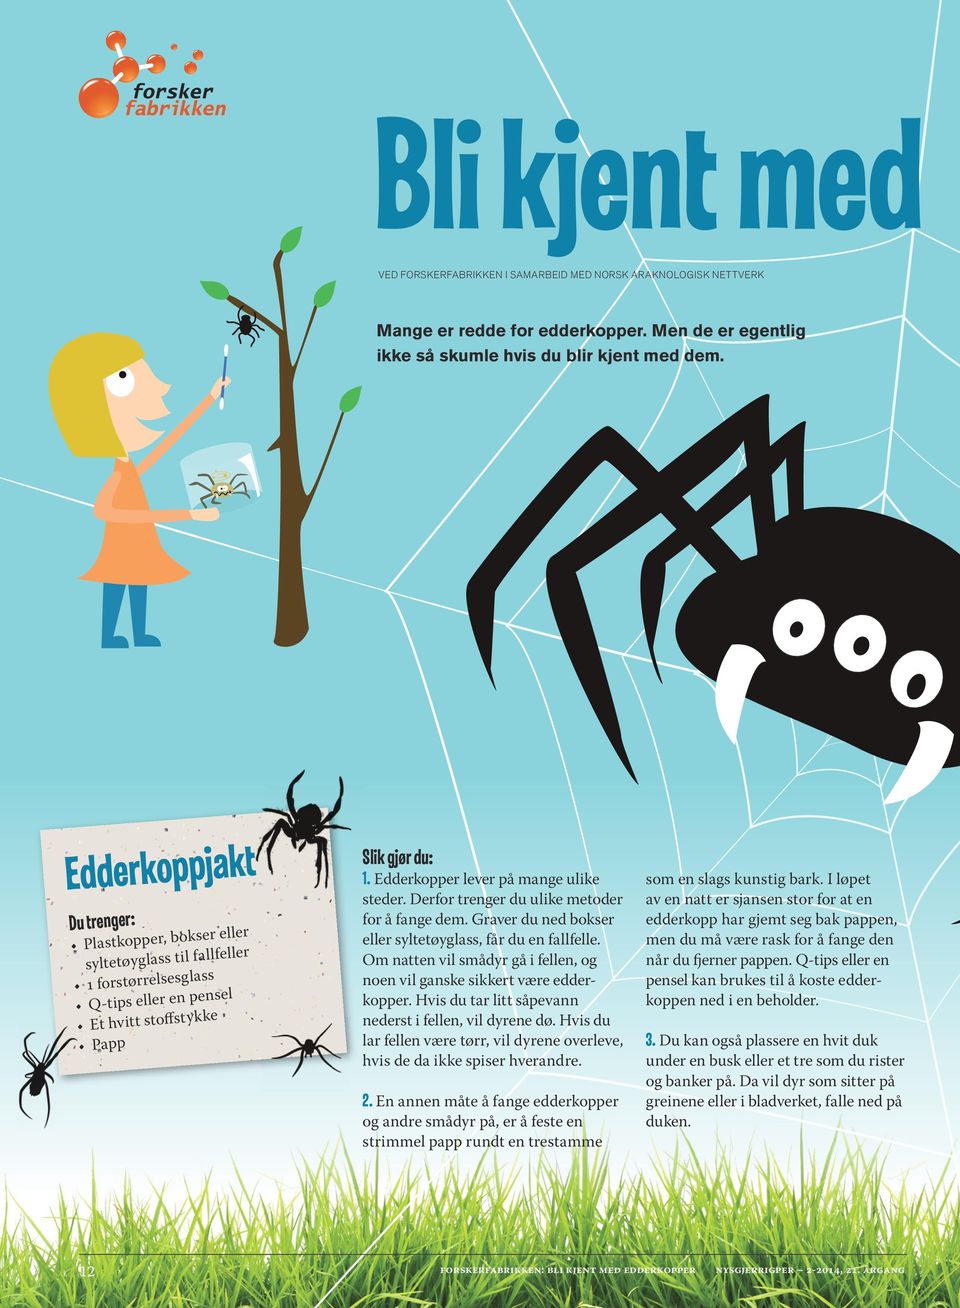 Edderkopper lever på mange ulike steder. Derfor trenger du ulike metoder for å fange dem. Graver du ned bokser eller syltetøyglass, får du en fallfelle.